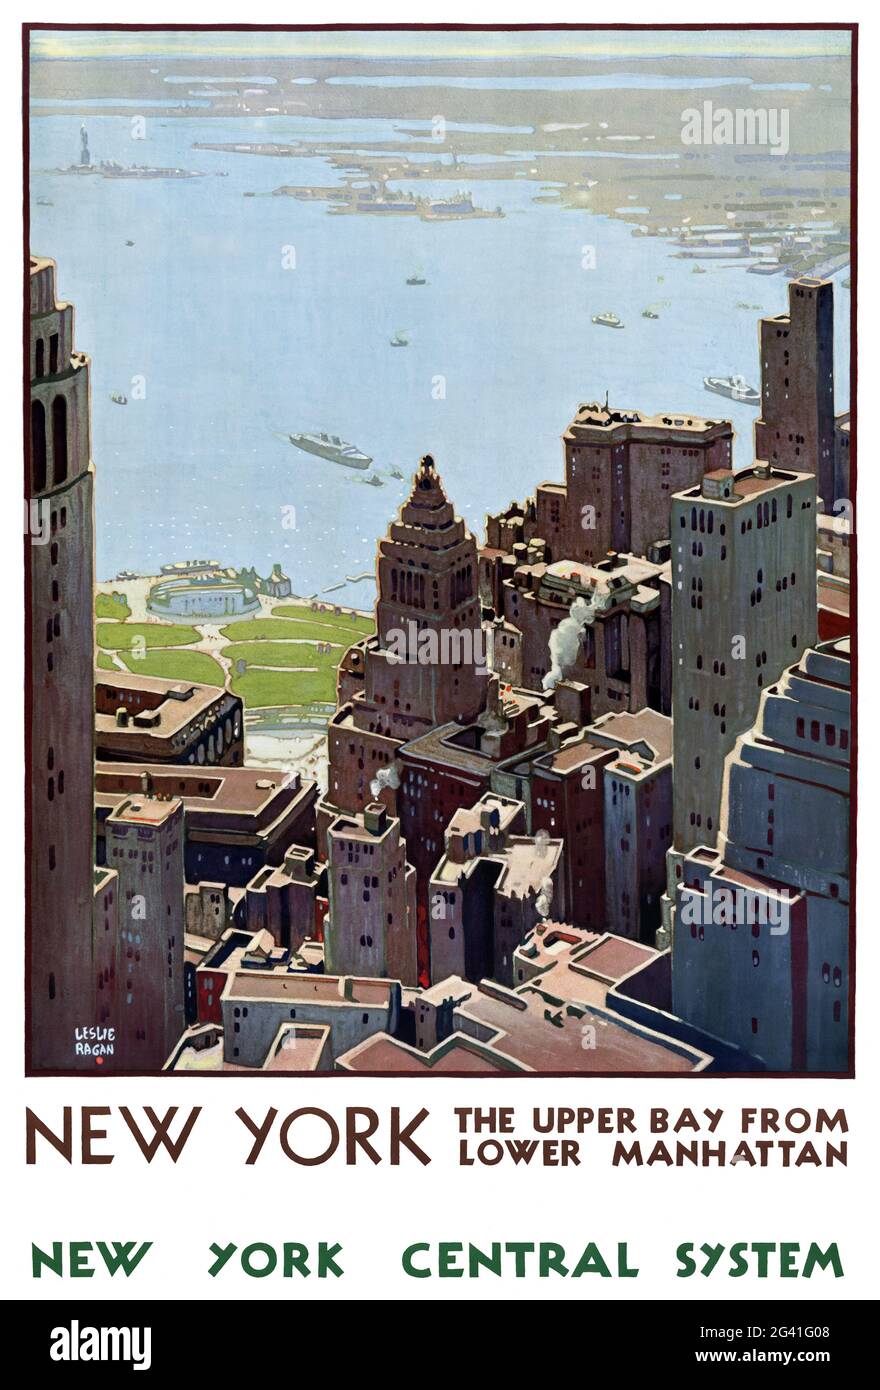 New York. Die Upper Bay von Lower Manhattan. New York Central System von Leslie Darrel Ragan (1897-1972). Restauriertes Vintage-Poster, das 1935 in den USA veröffentlicht wurde. Stockfoto